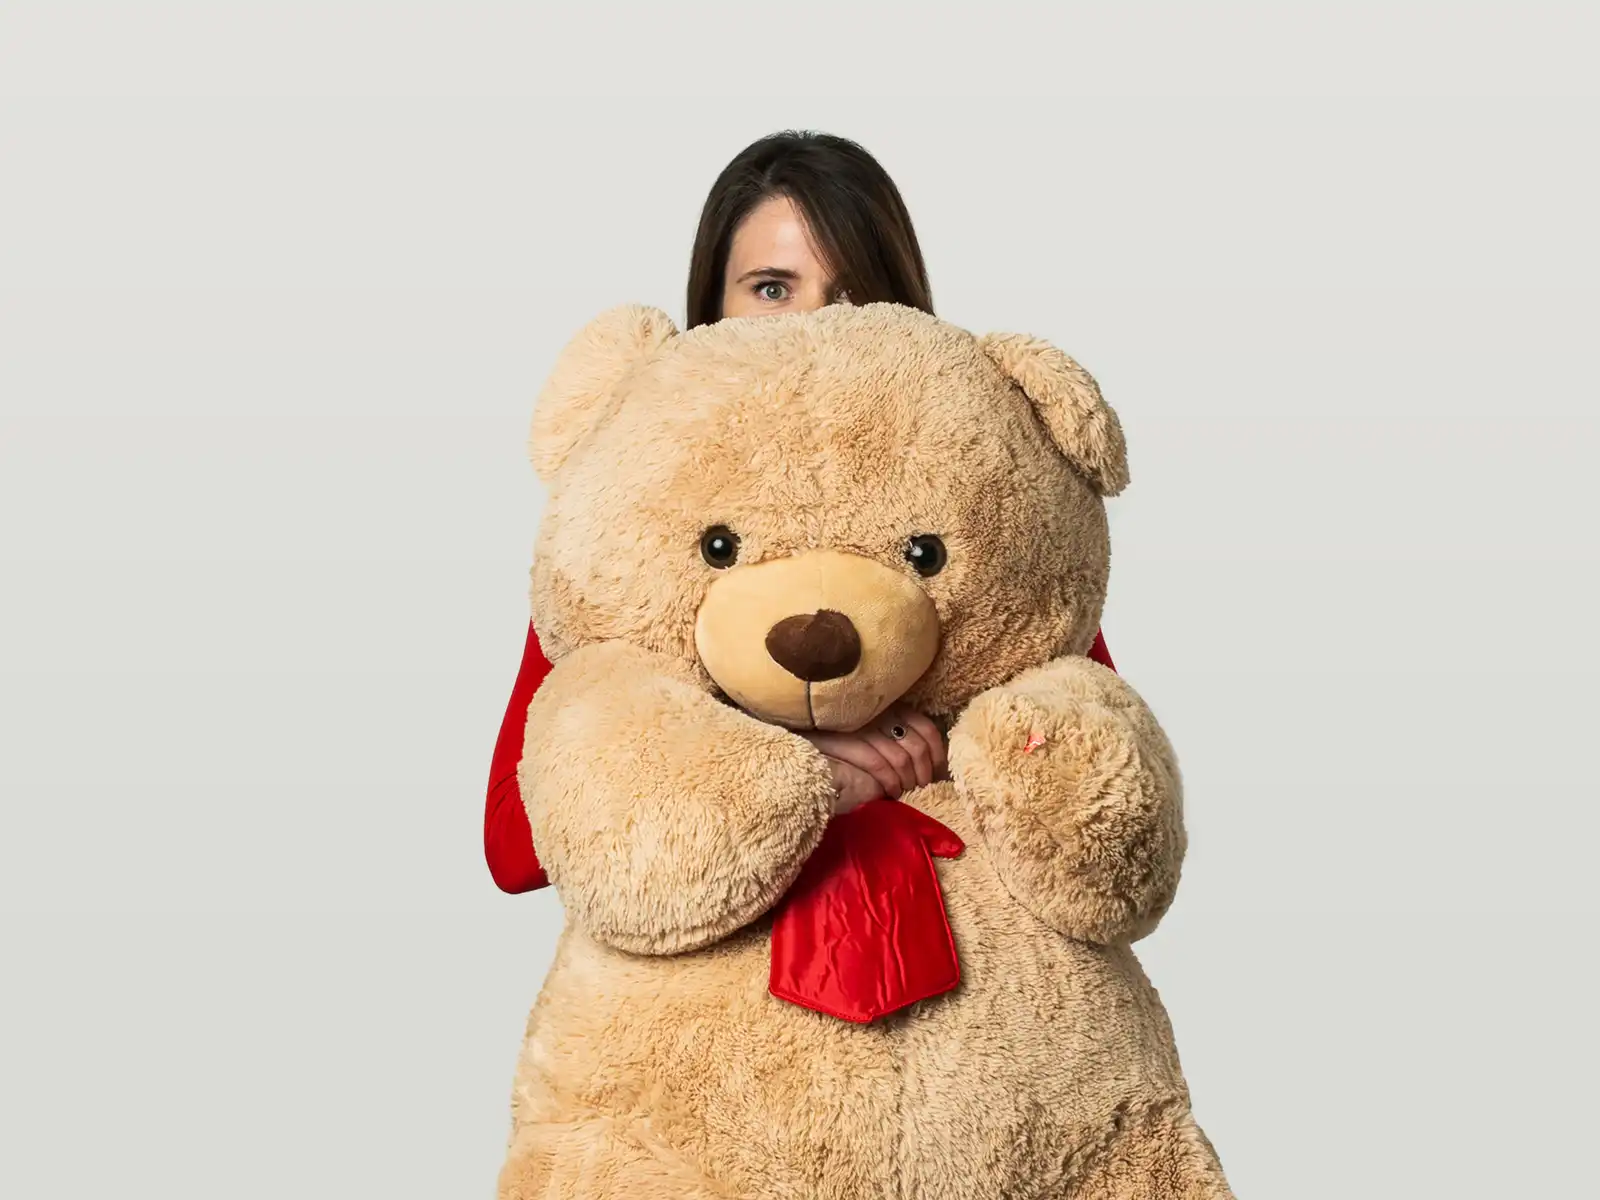 Lauren with a huge teddy